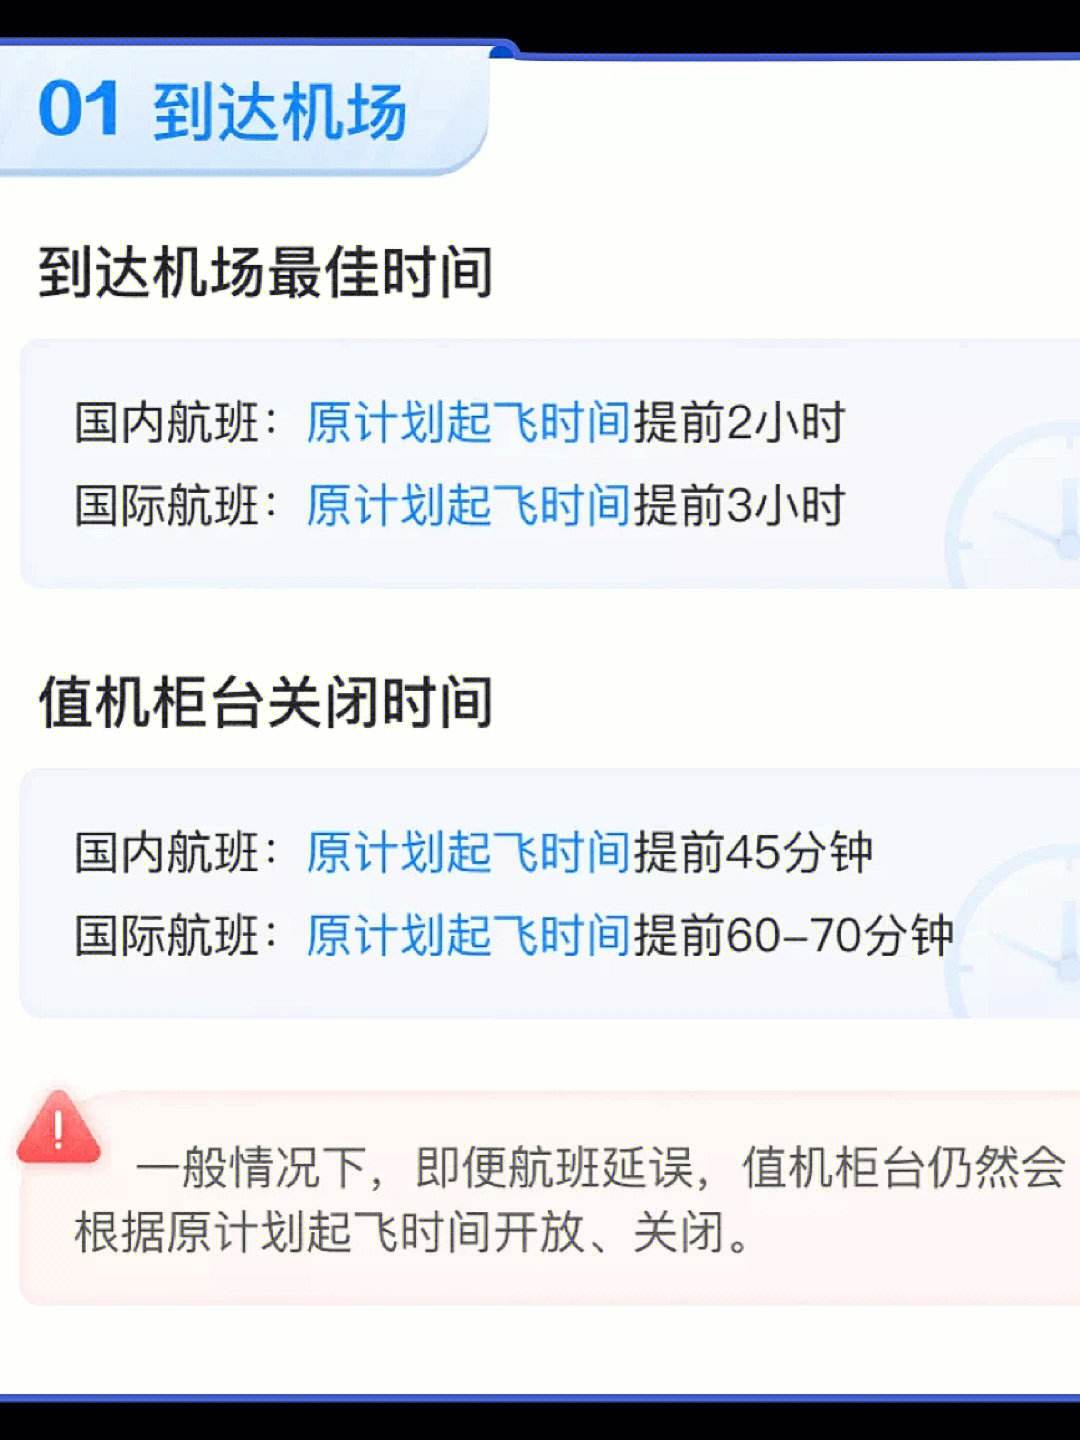 飞机聊天软件中文版v1-飞机聊天软件中文版下载苹果